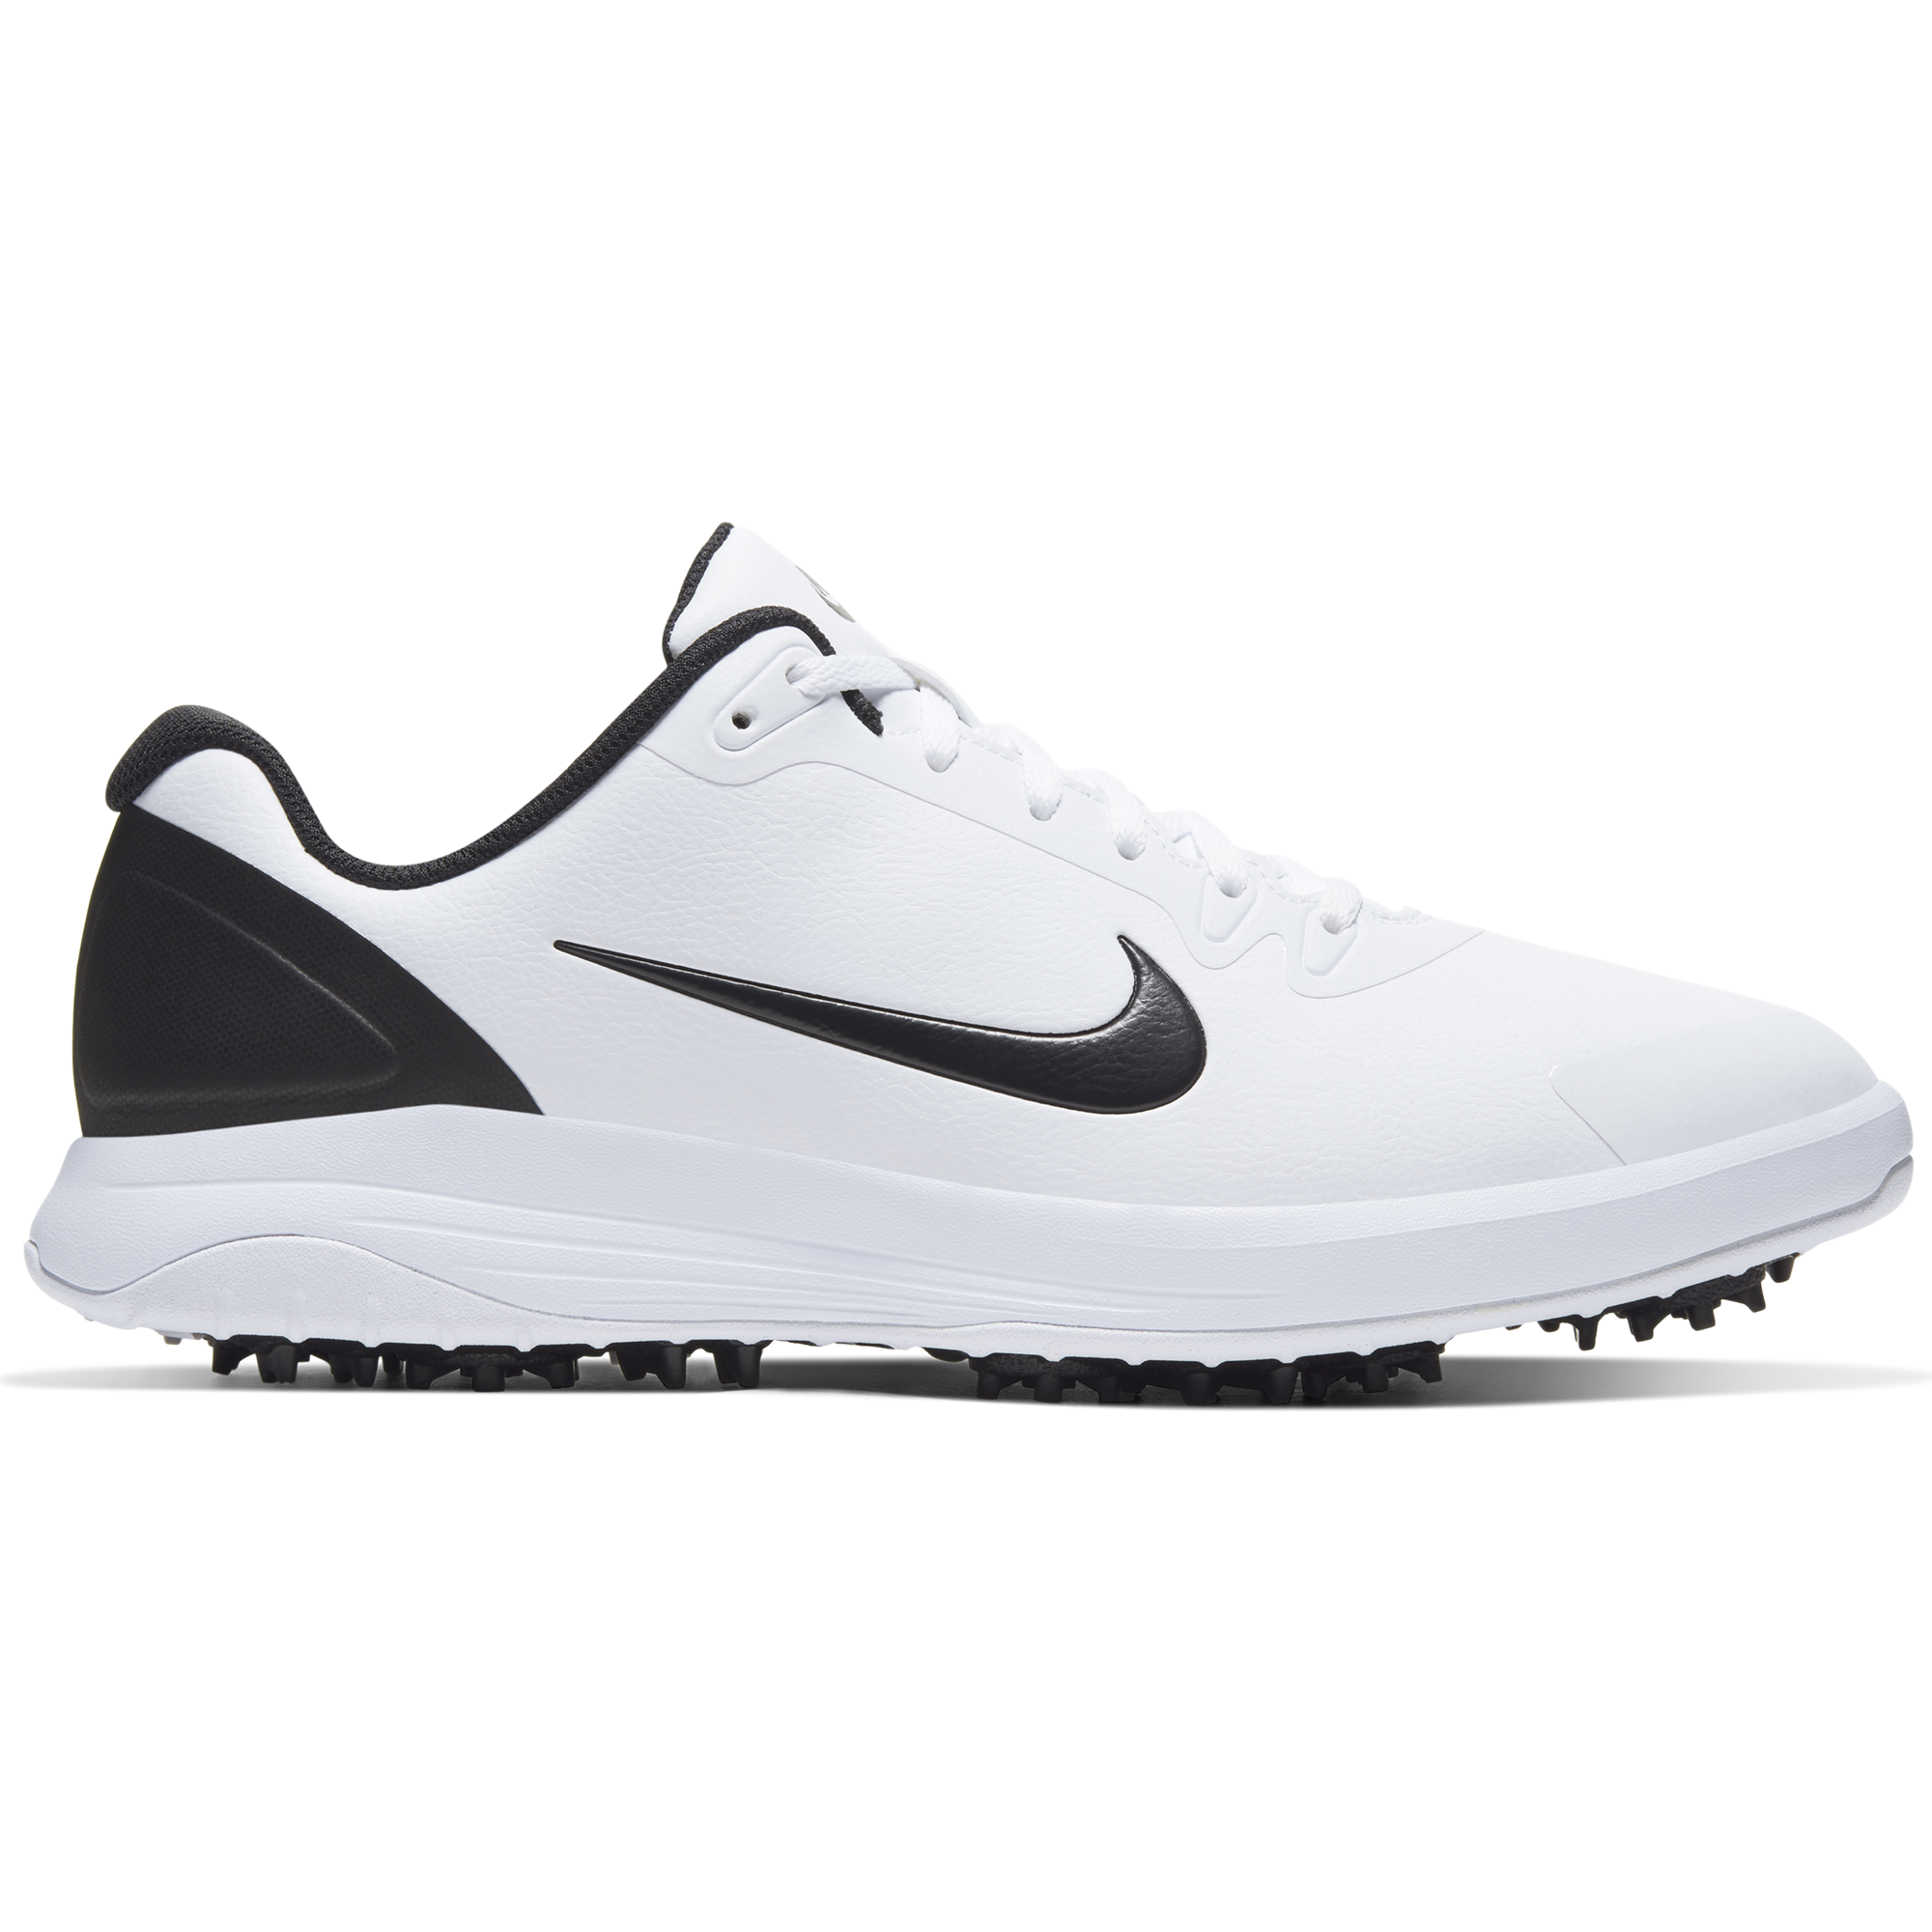 Nike Infinity G Men's Golf Shoe - White 